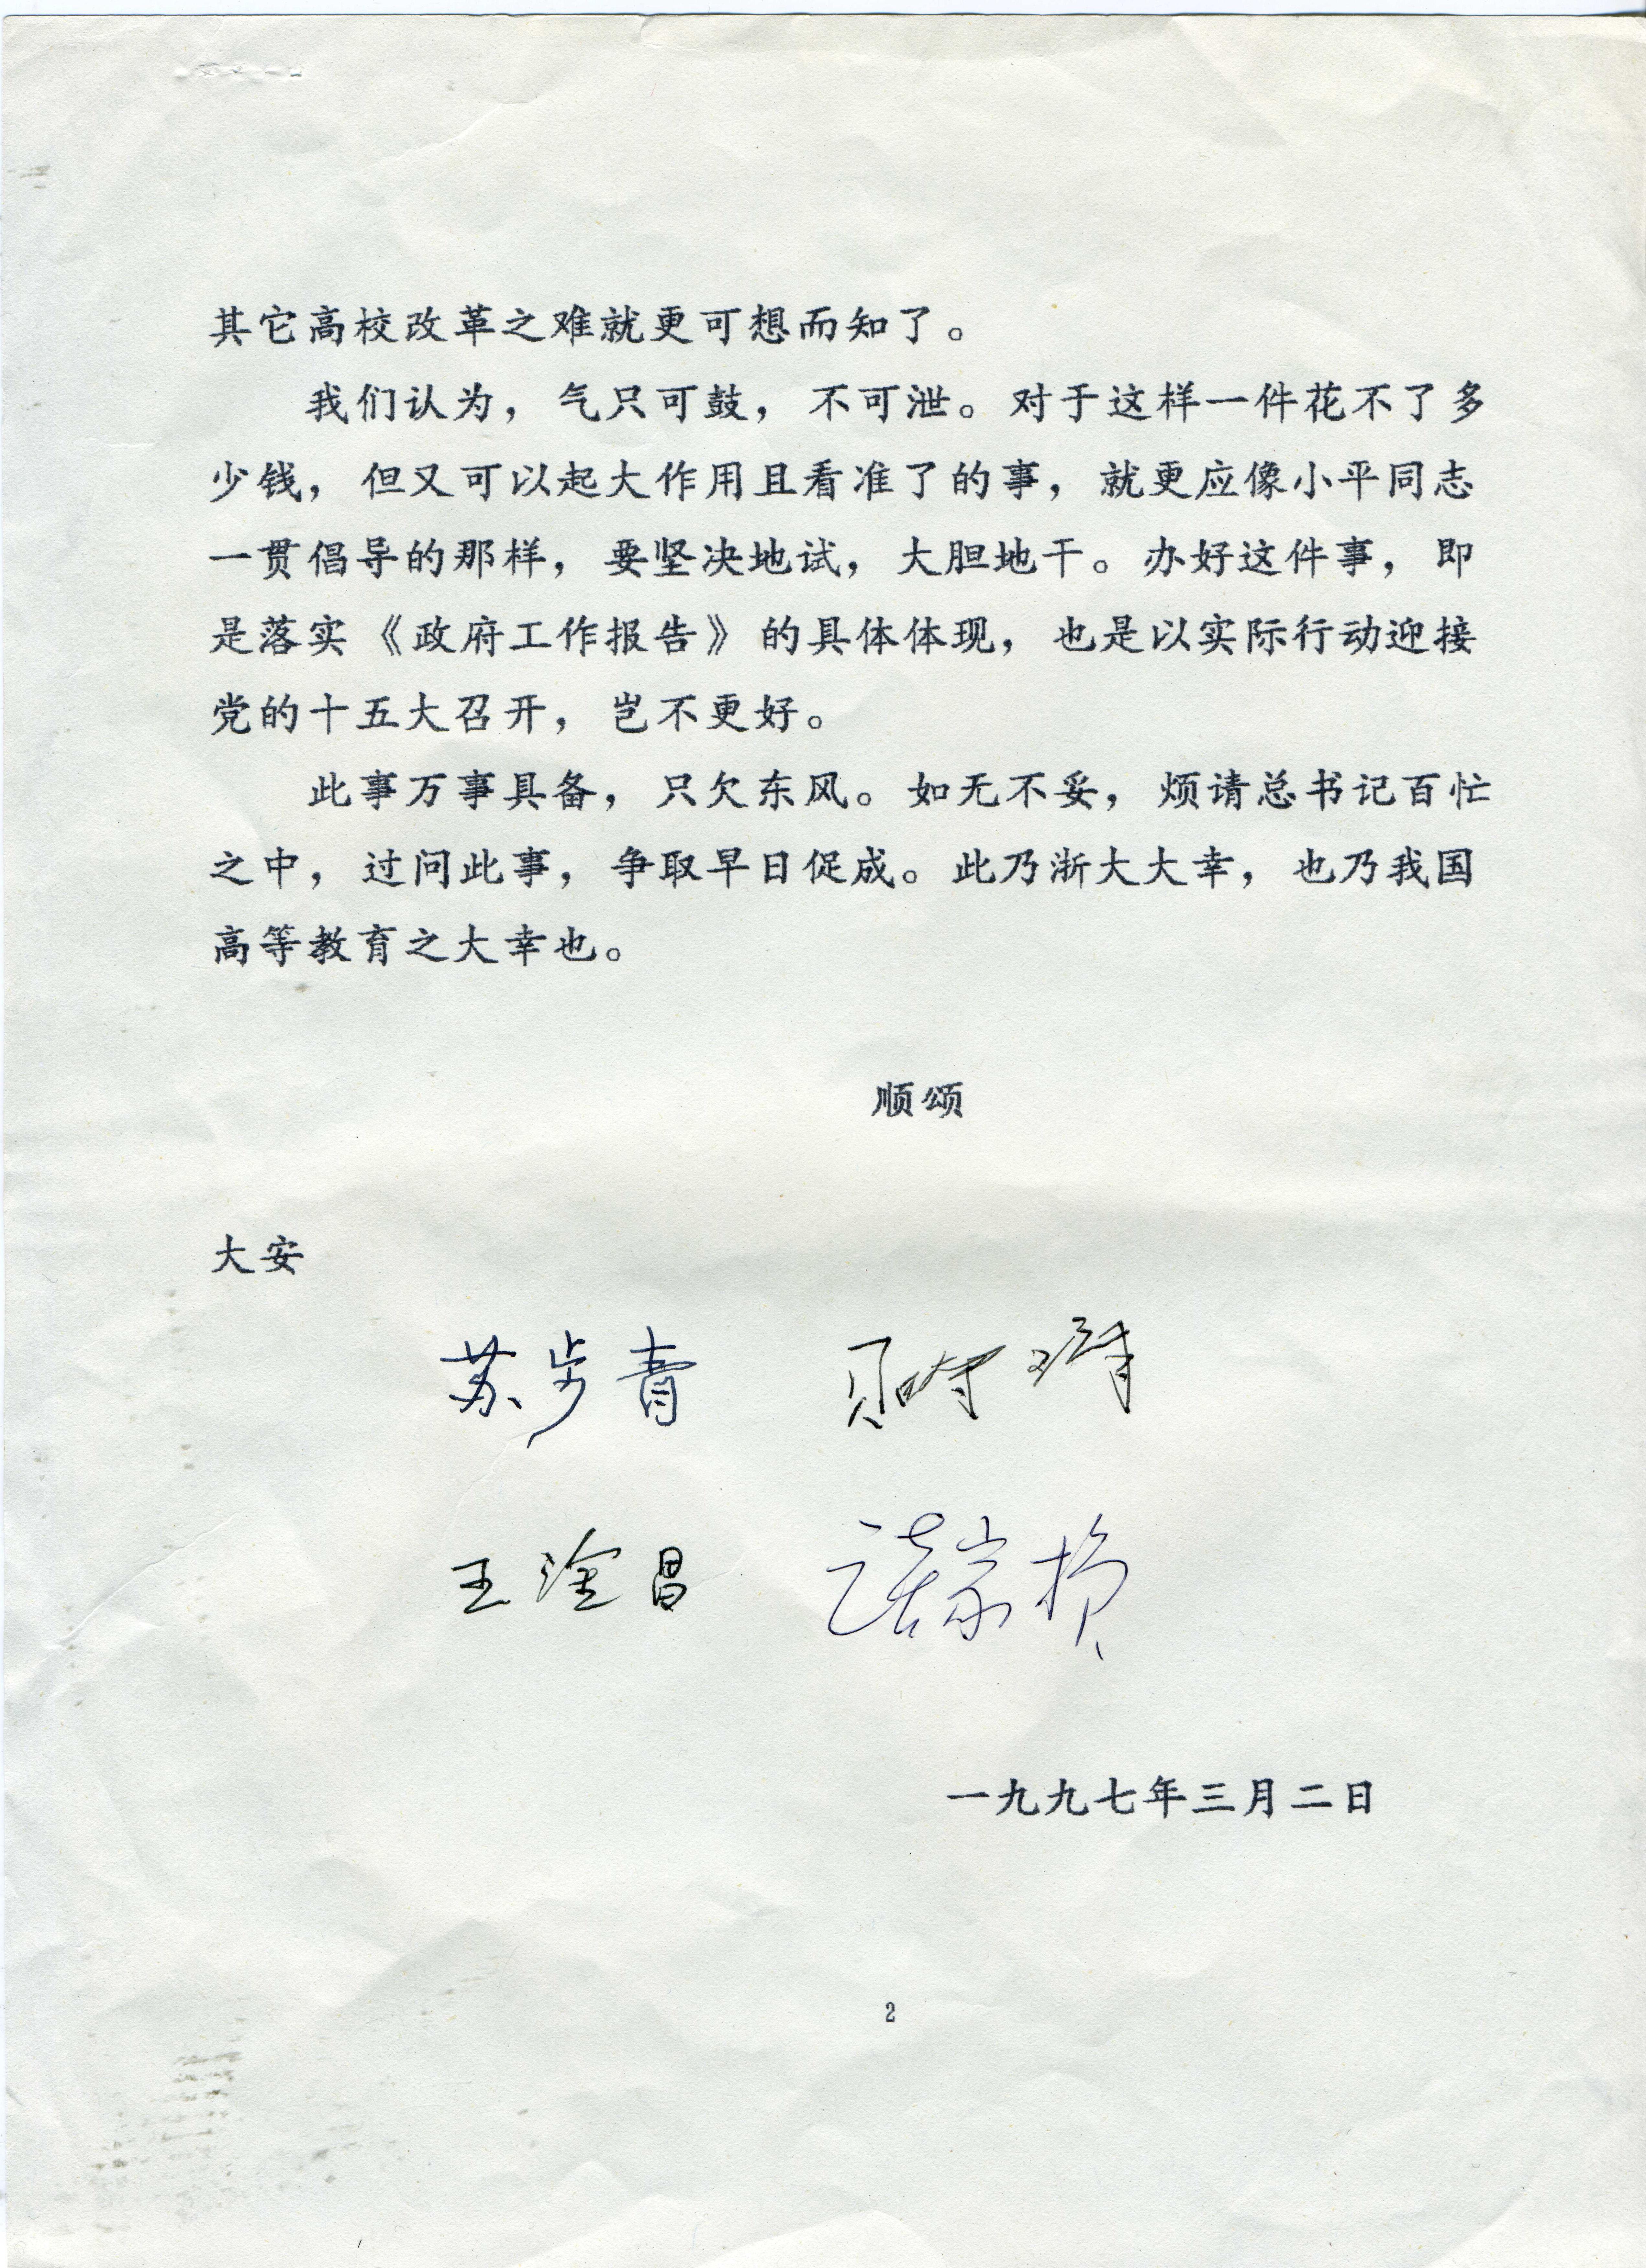 1997年3月2日，苏步青、贝时璋、王淦昌、谈家桢关于四校合并致时任中共中央总书记江泽民的函第2页。